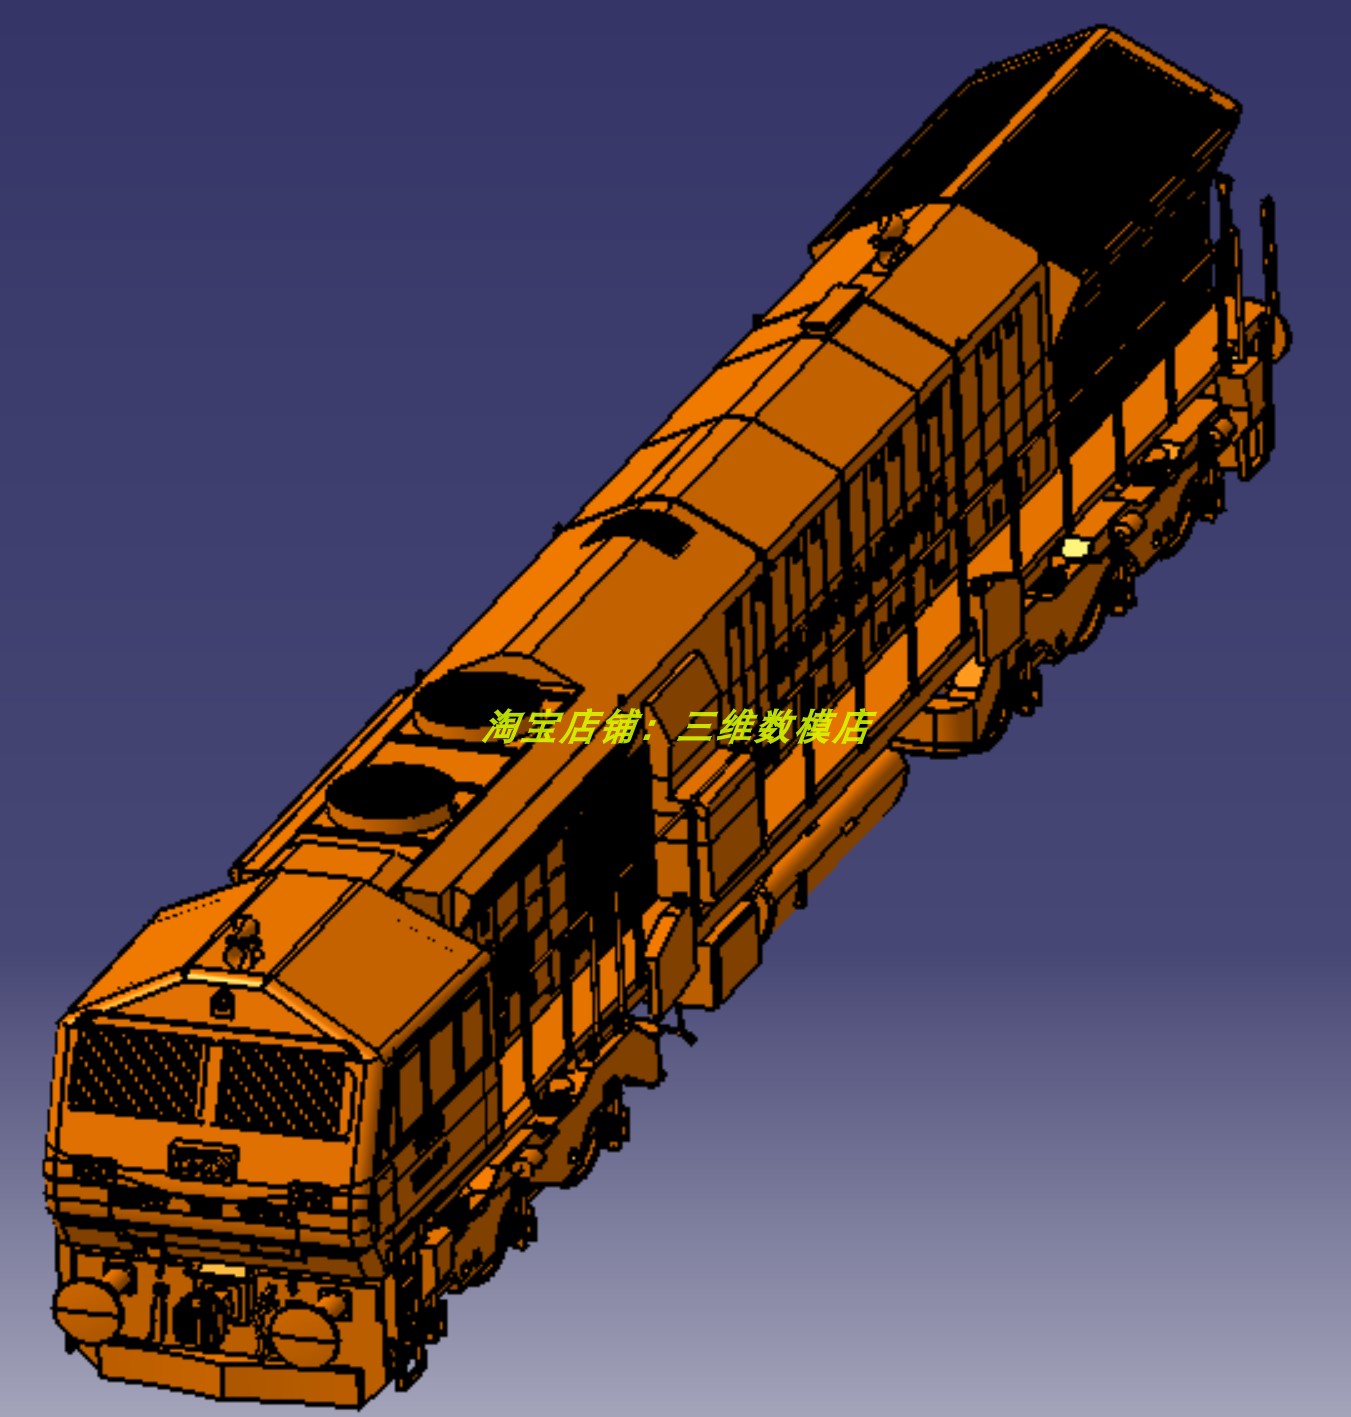 印度机车列车火车头实体三维几何数模型3D打印素材底盘车轮对悬挂